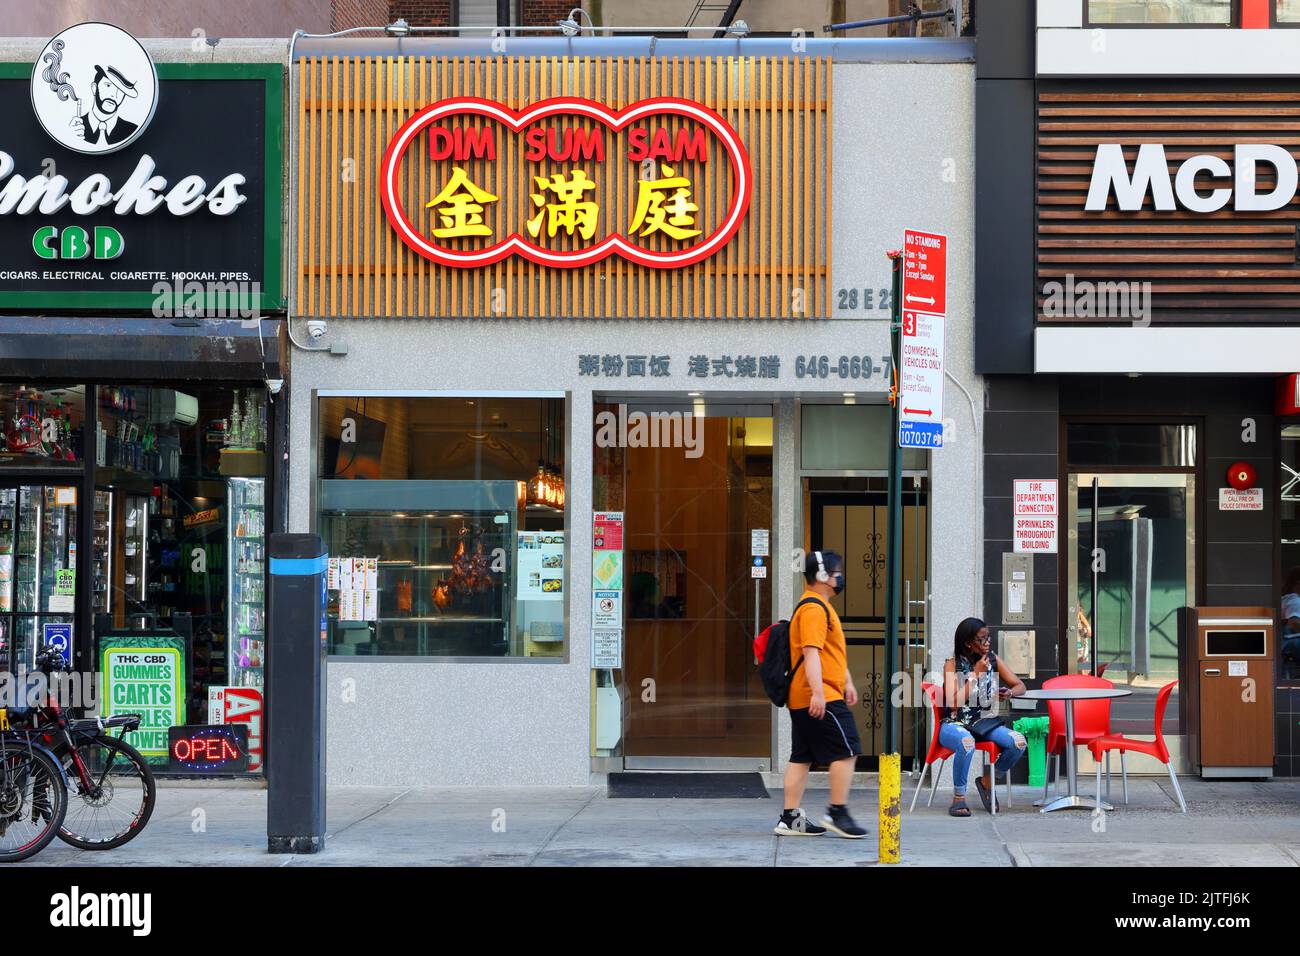 Dim Sum Sam 金滿庭, 28 E 23. St, New York, NYC Foto von einem schnellen, zwanglosen kantonesischen chinesischen Restaurant im Flatiron District von Manhattan. Stockfoto